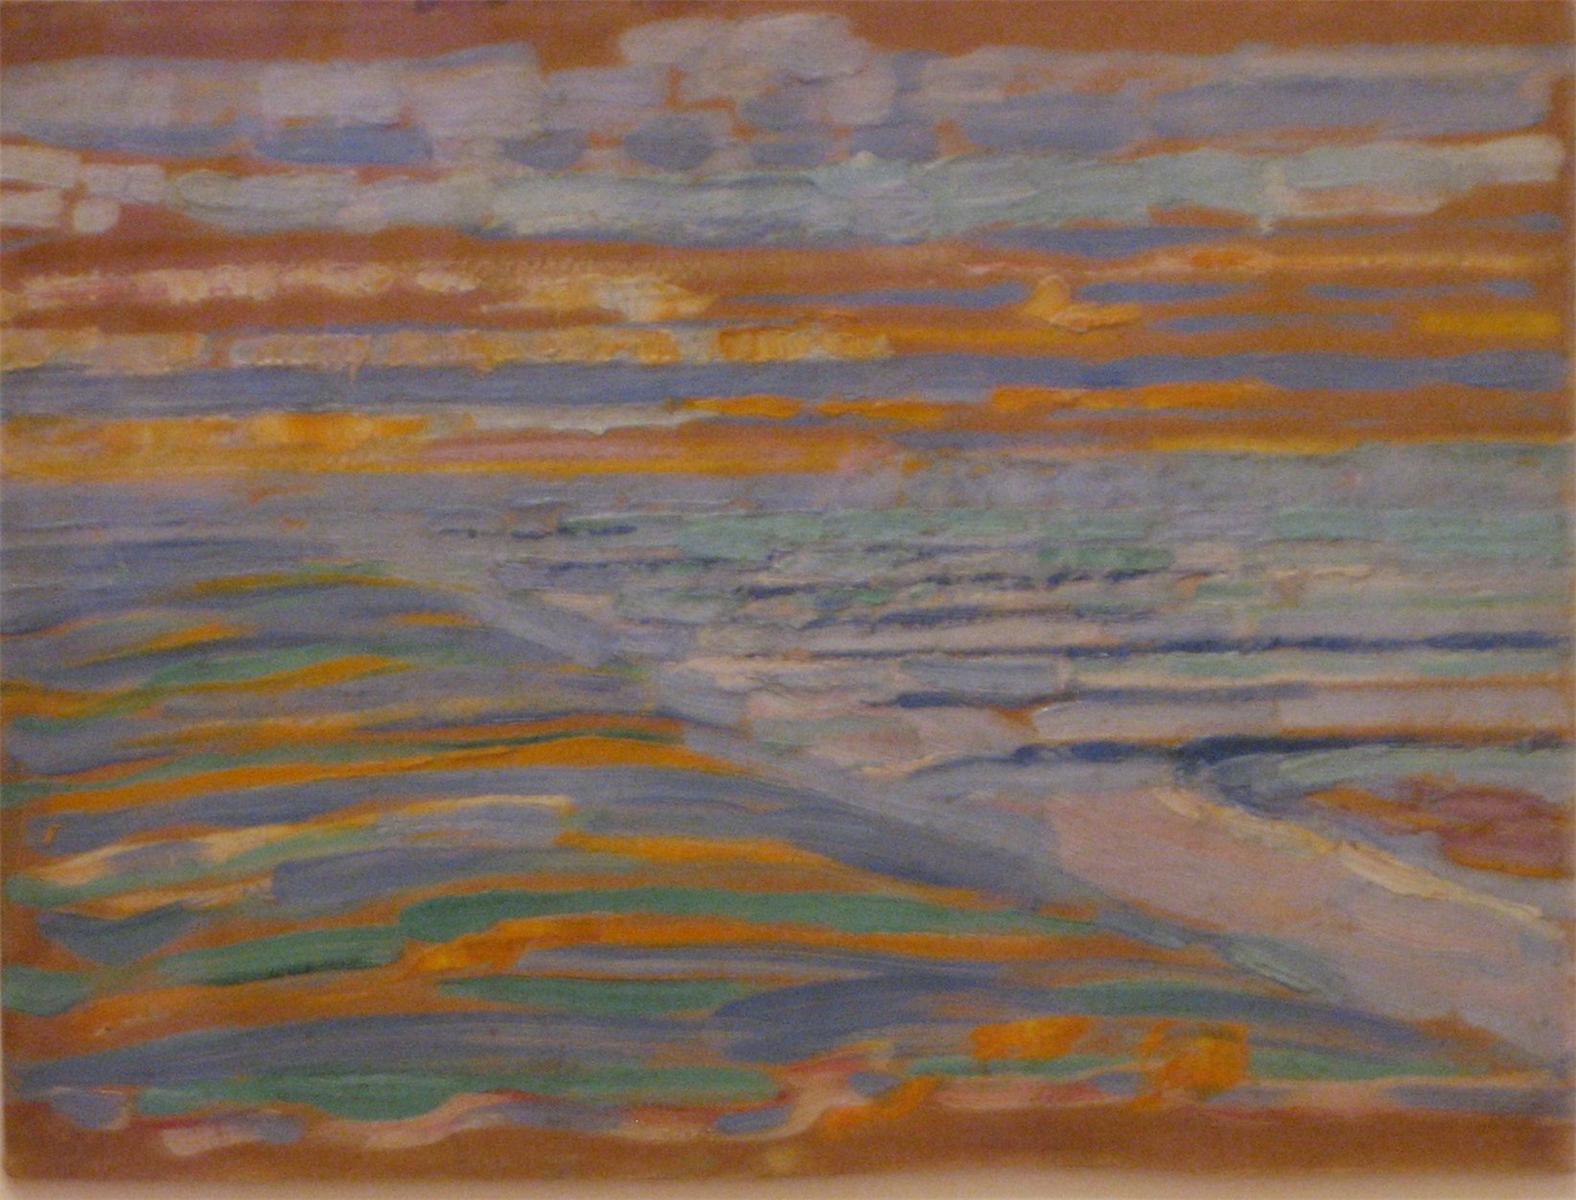 Vista dalle dune con spiaggia e moli by Piet Mondrian - 1909 - 28,5 x 38,5 cm Museum of Modern Art